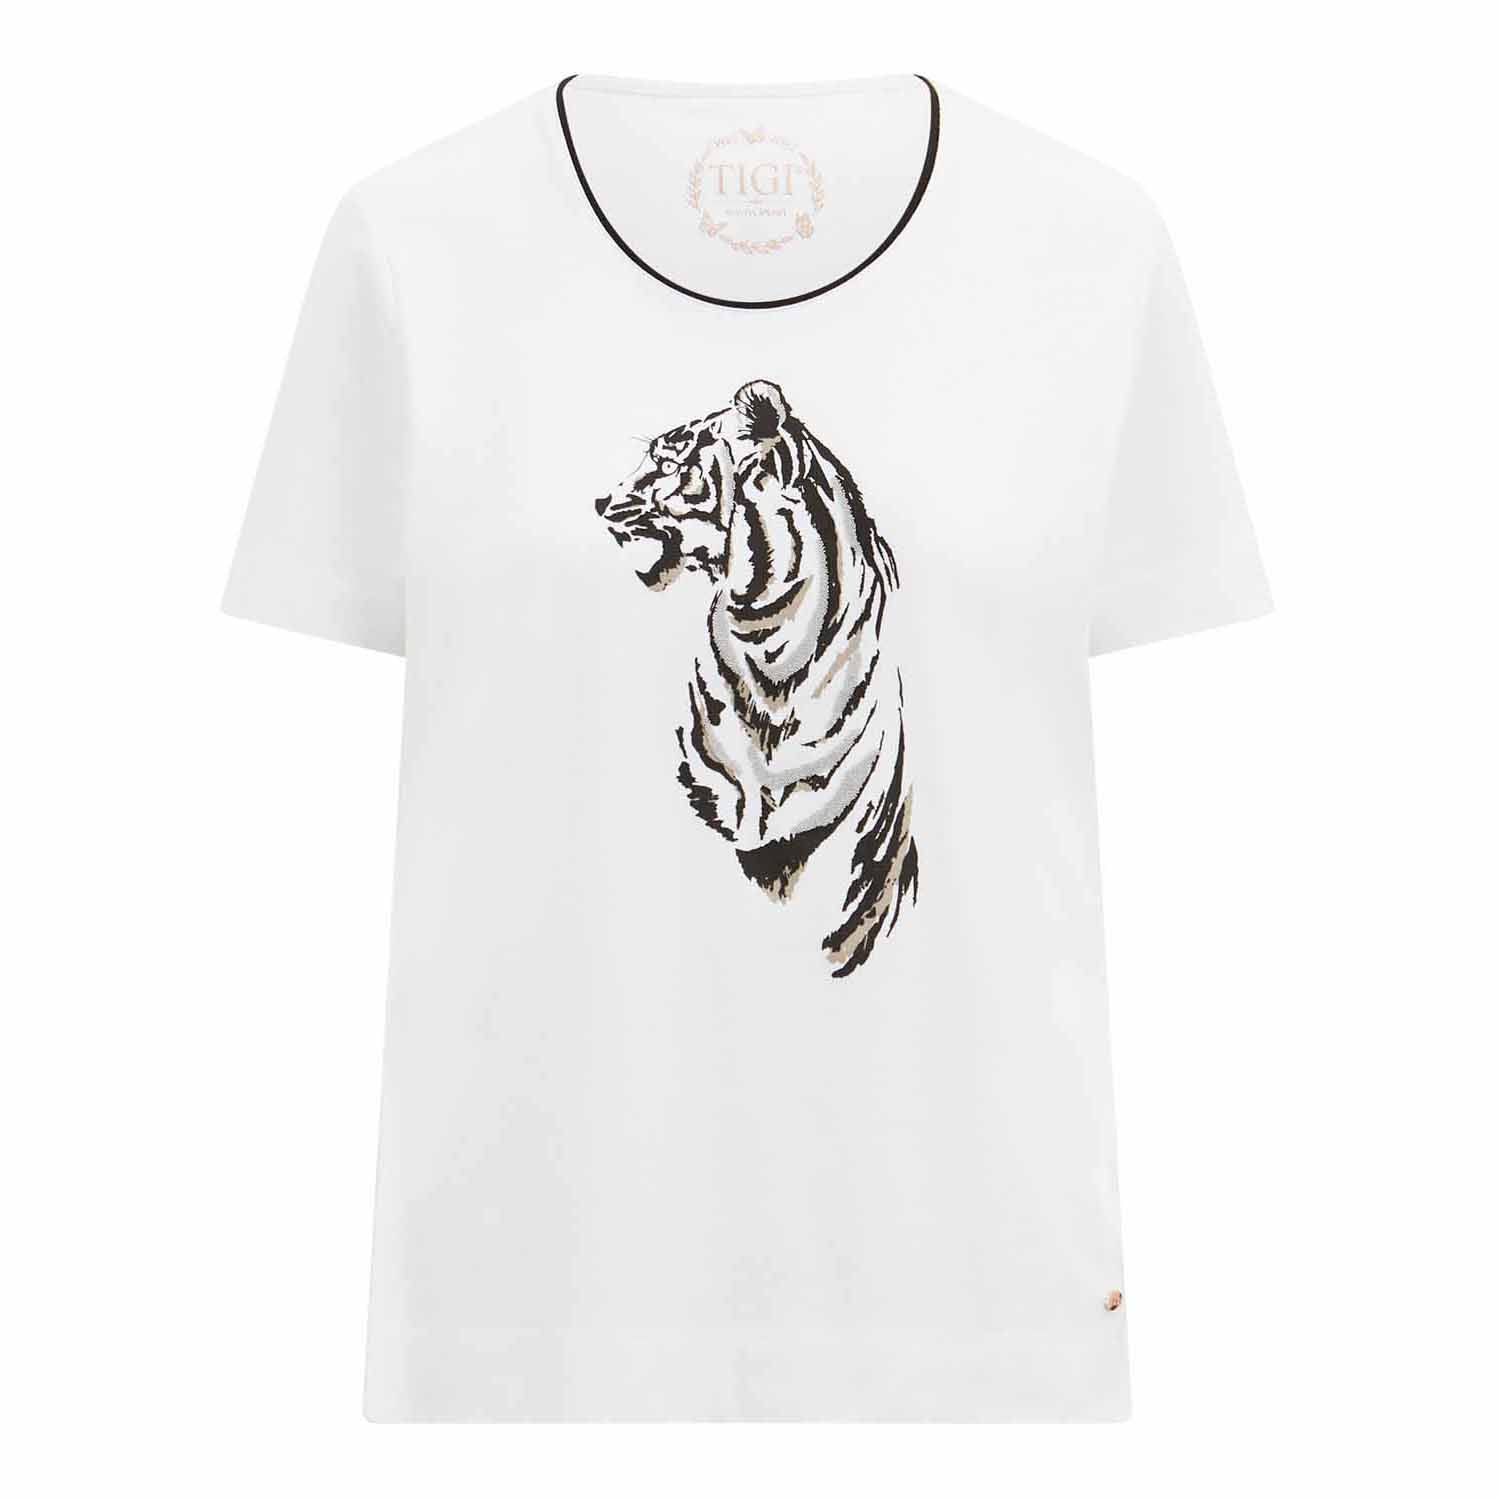 Tigiwear Wildlife Tiger Print Top - White 4 Shaws Department Stores